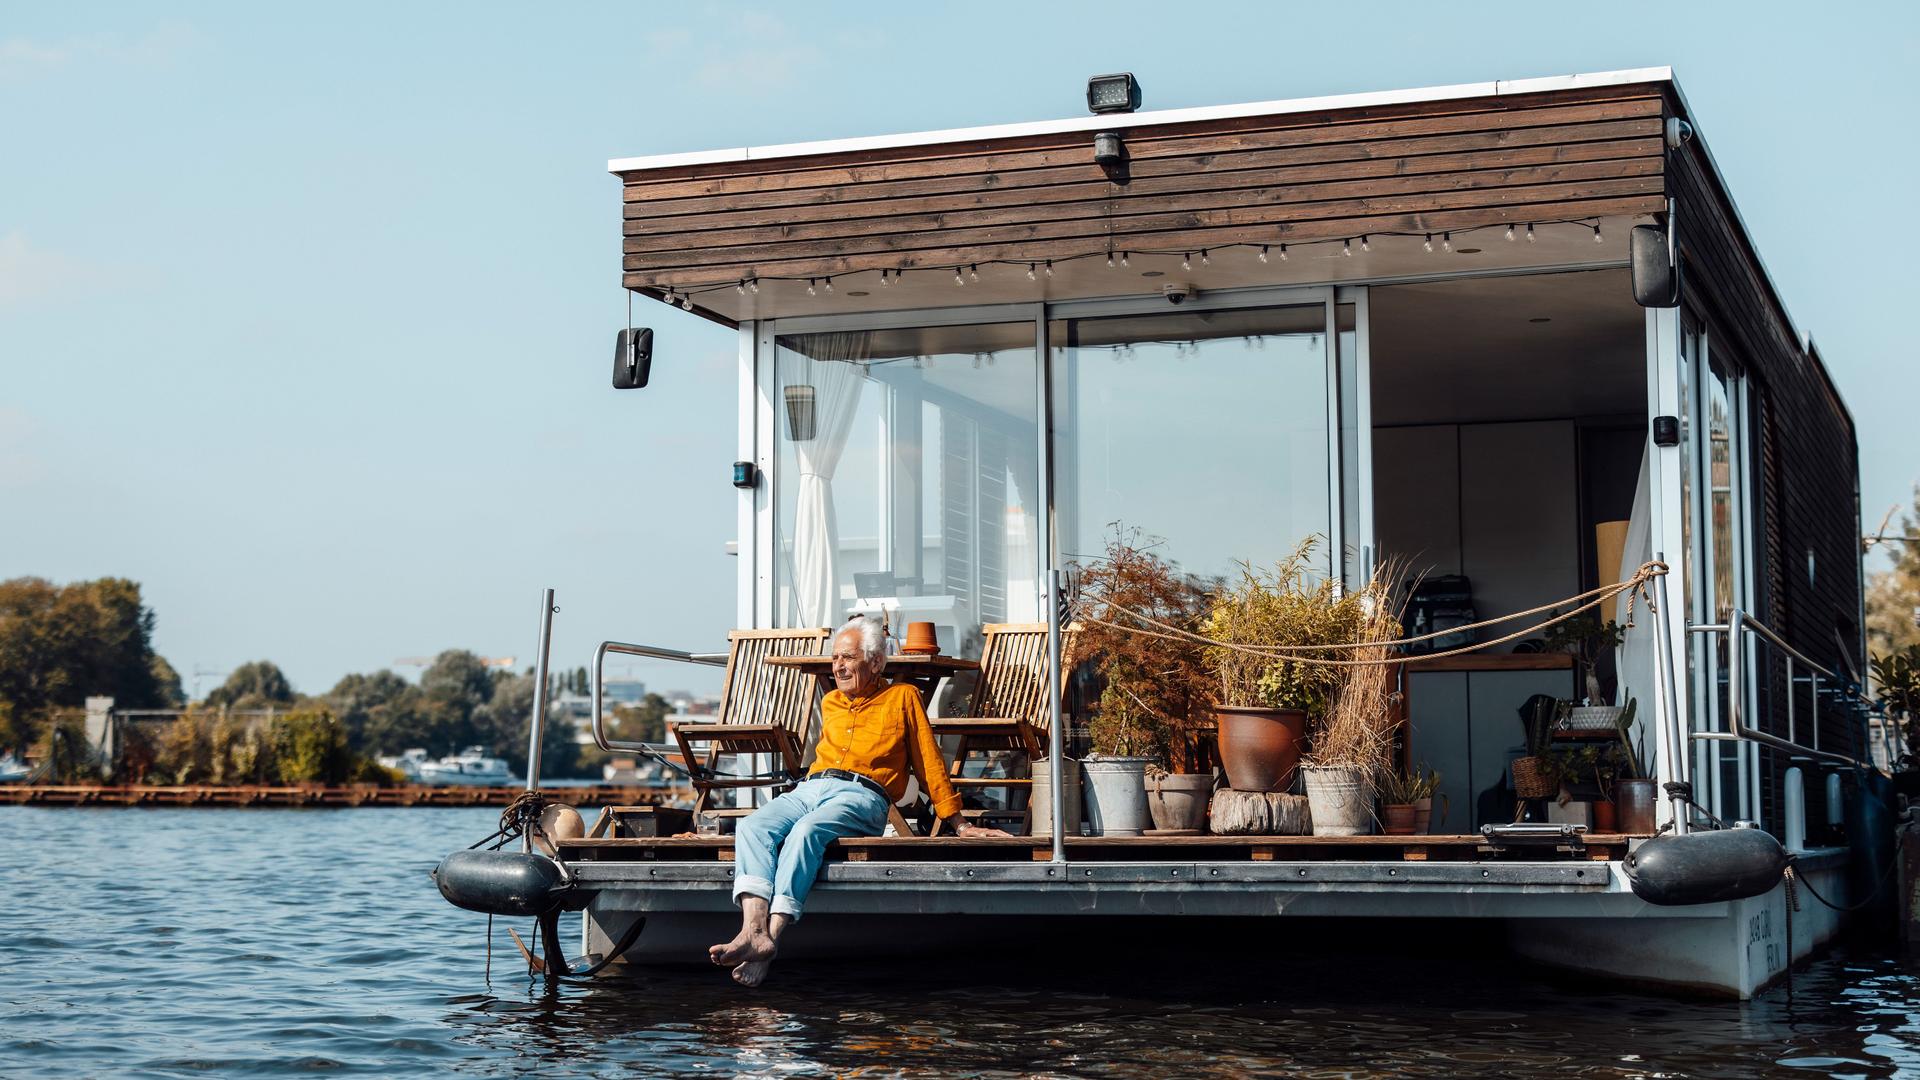 Mann mit gruaen Haaren und einem gelben Pulli sitzt am Heck eines Hausboots und lässt die Beine baumeln.